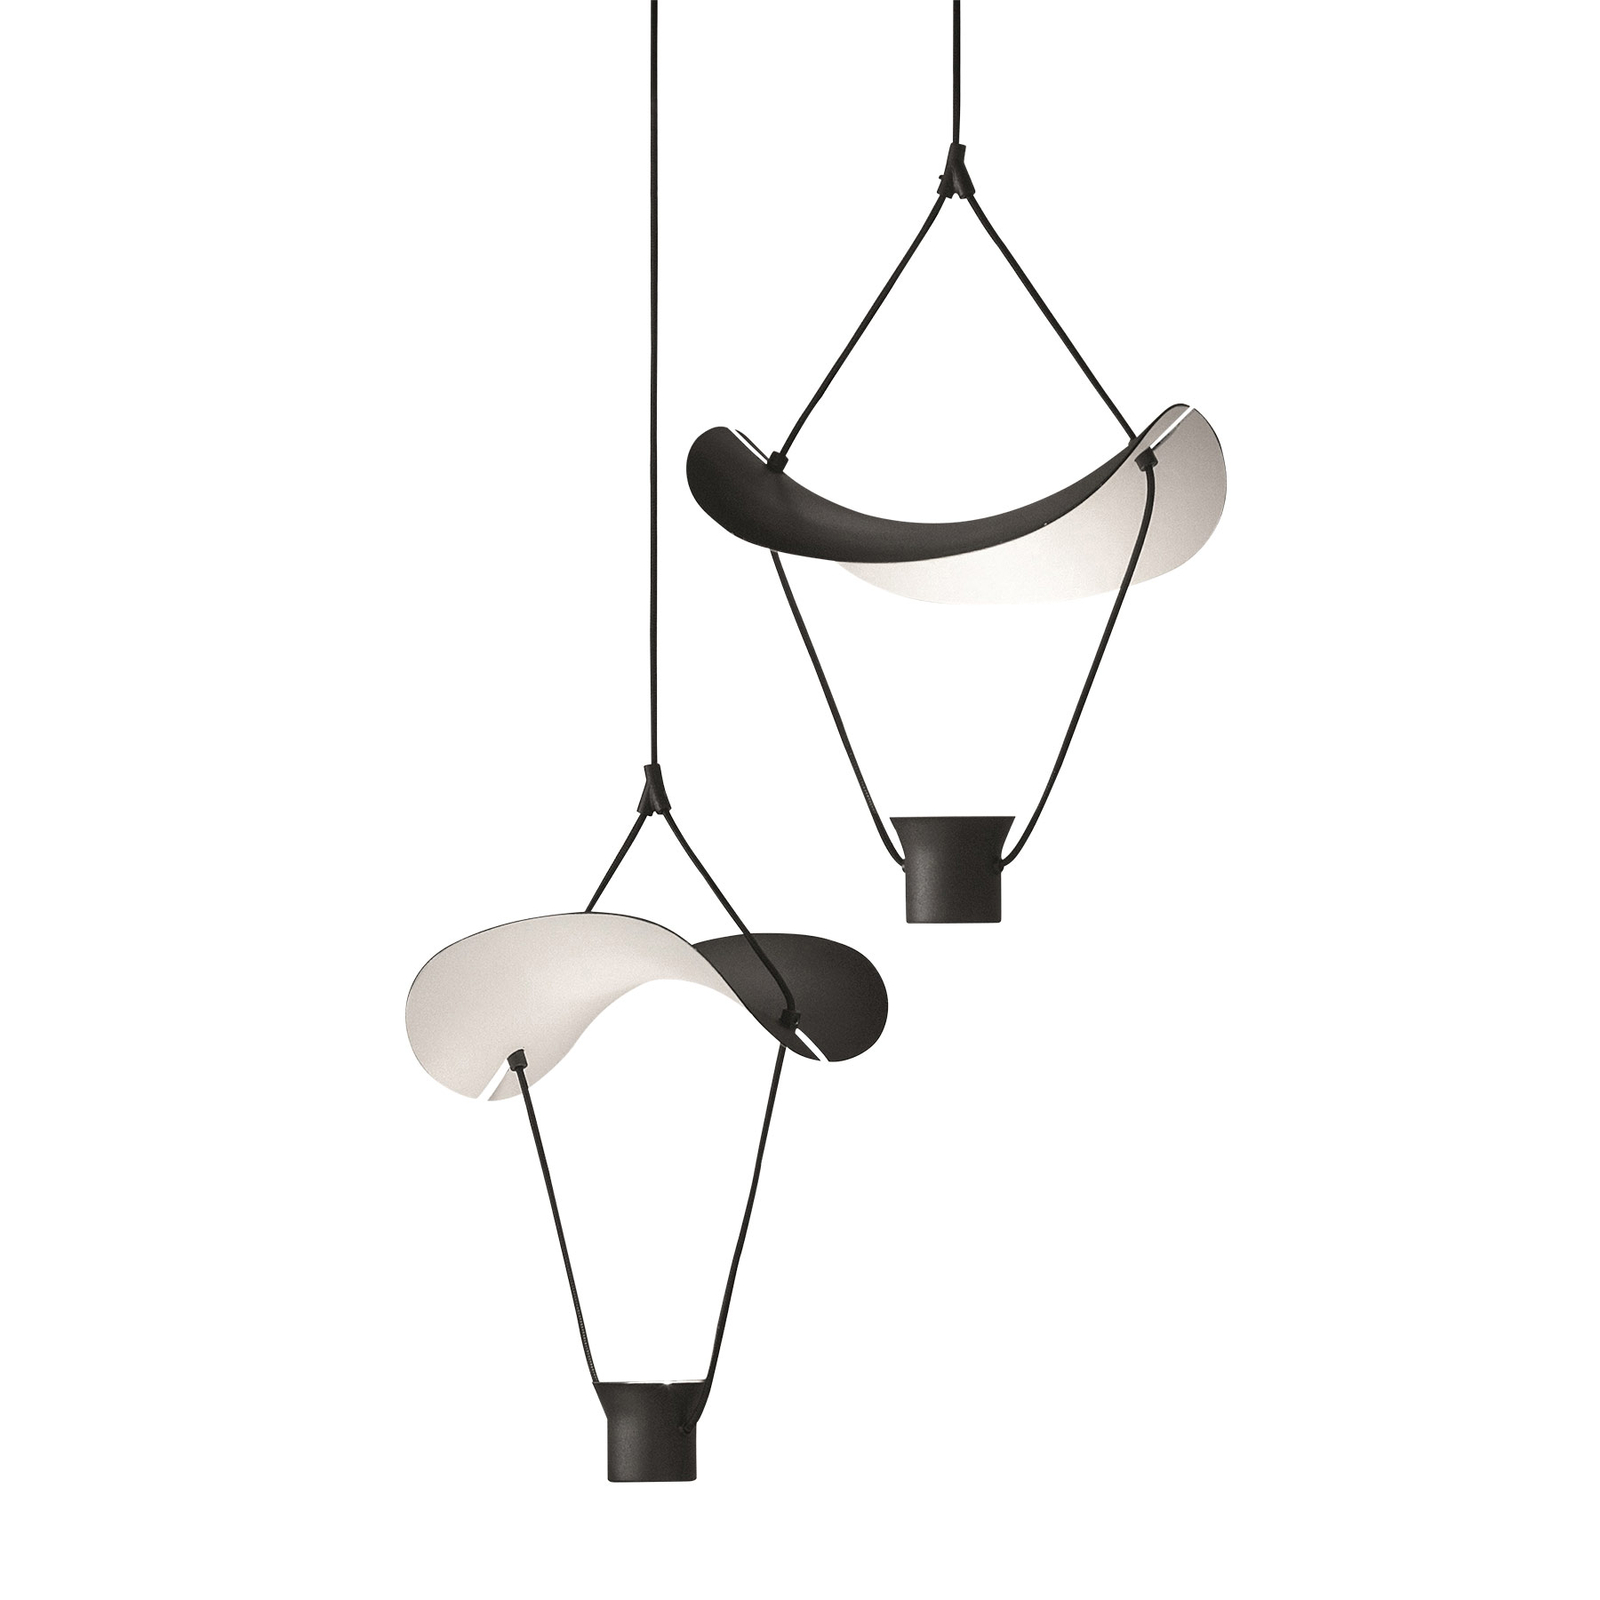 Vollee S1 P LED hanging light, 44 cm, up, black